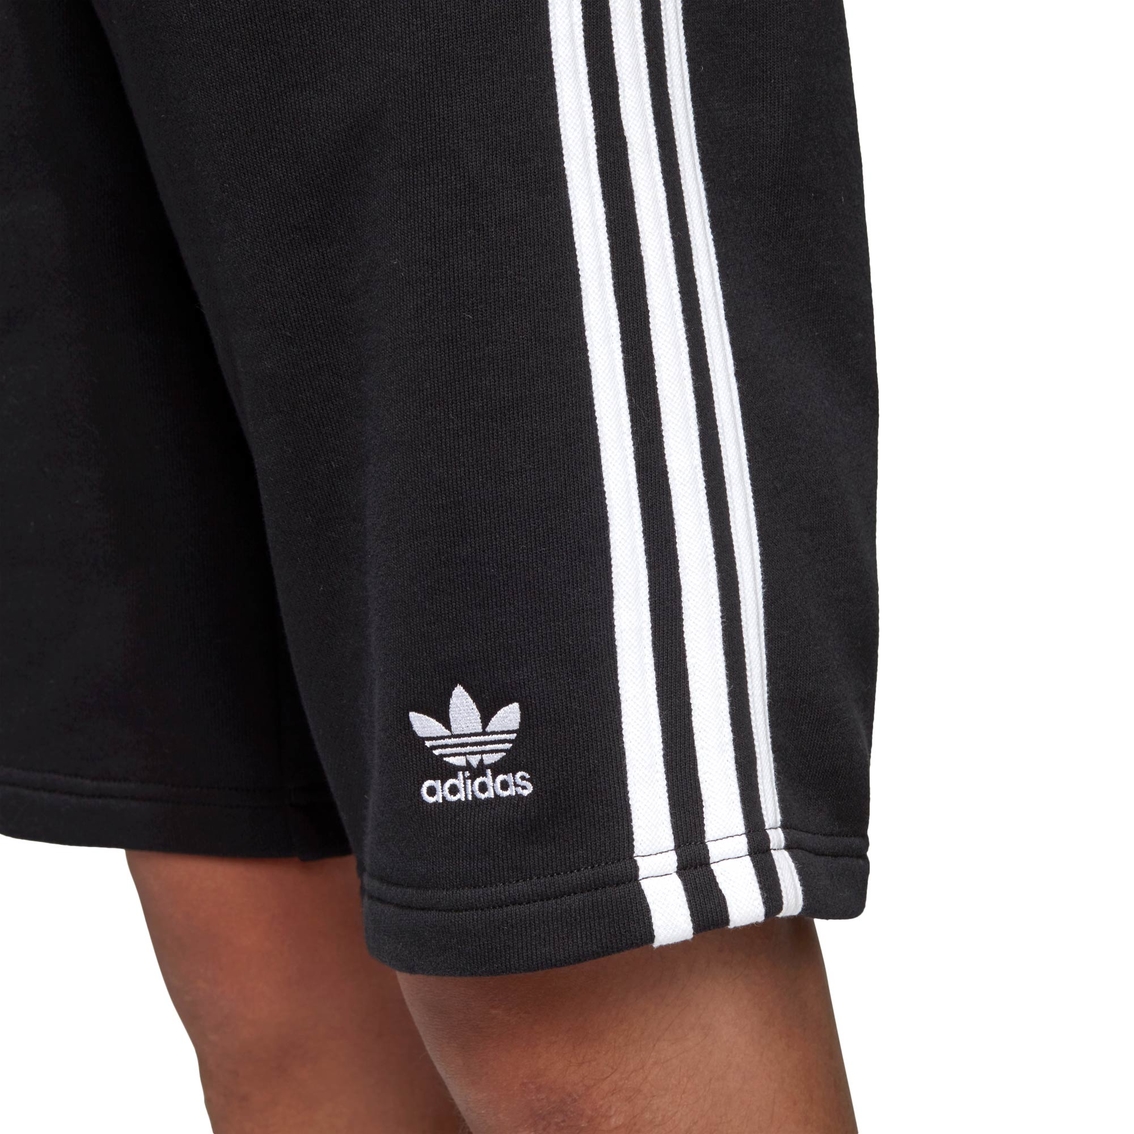 Adidas 3 Stripes Shorts - Image 4 of 4